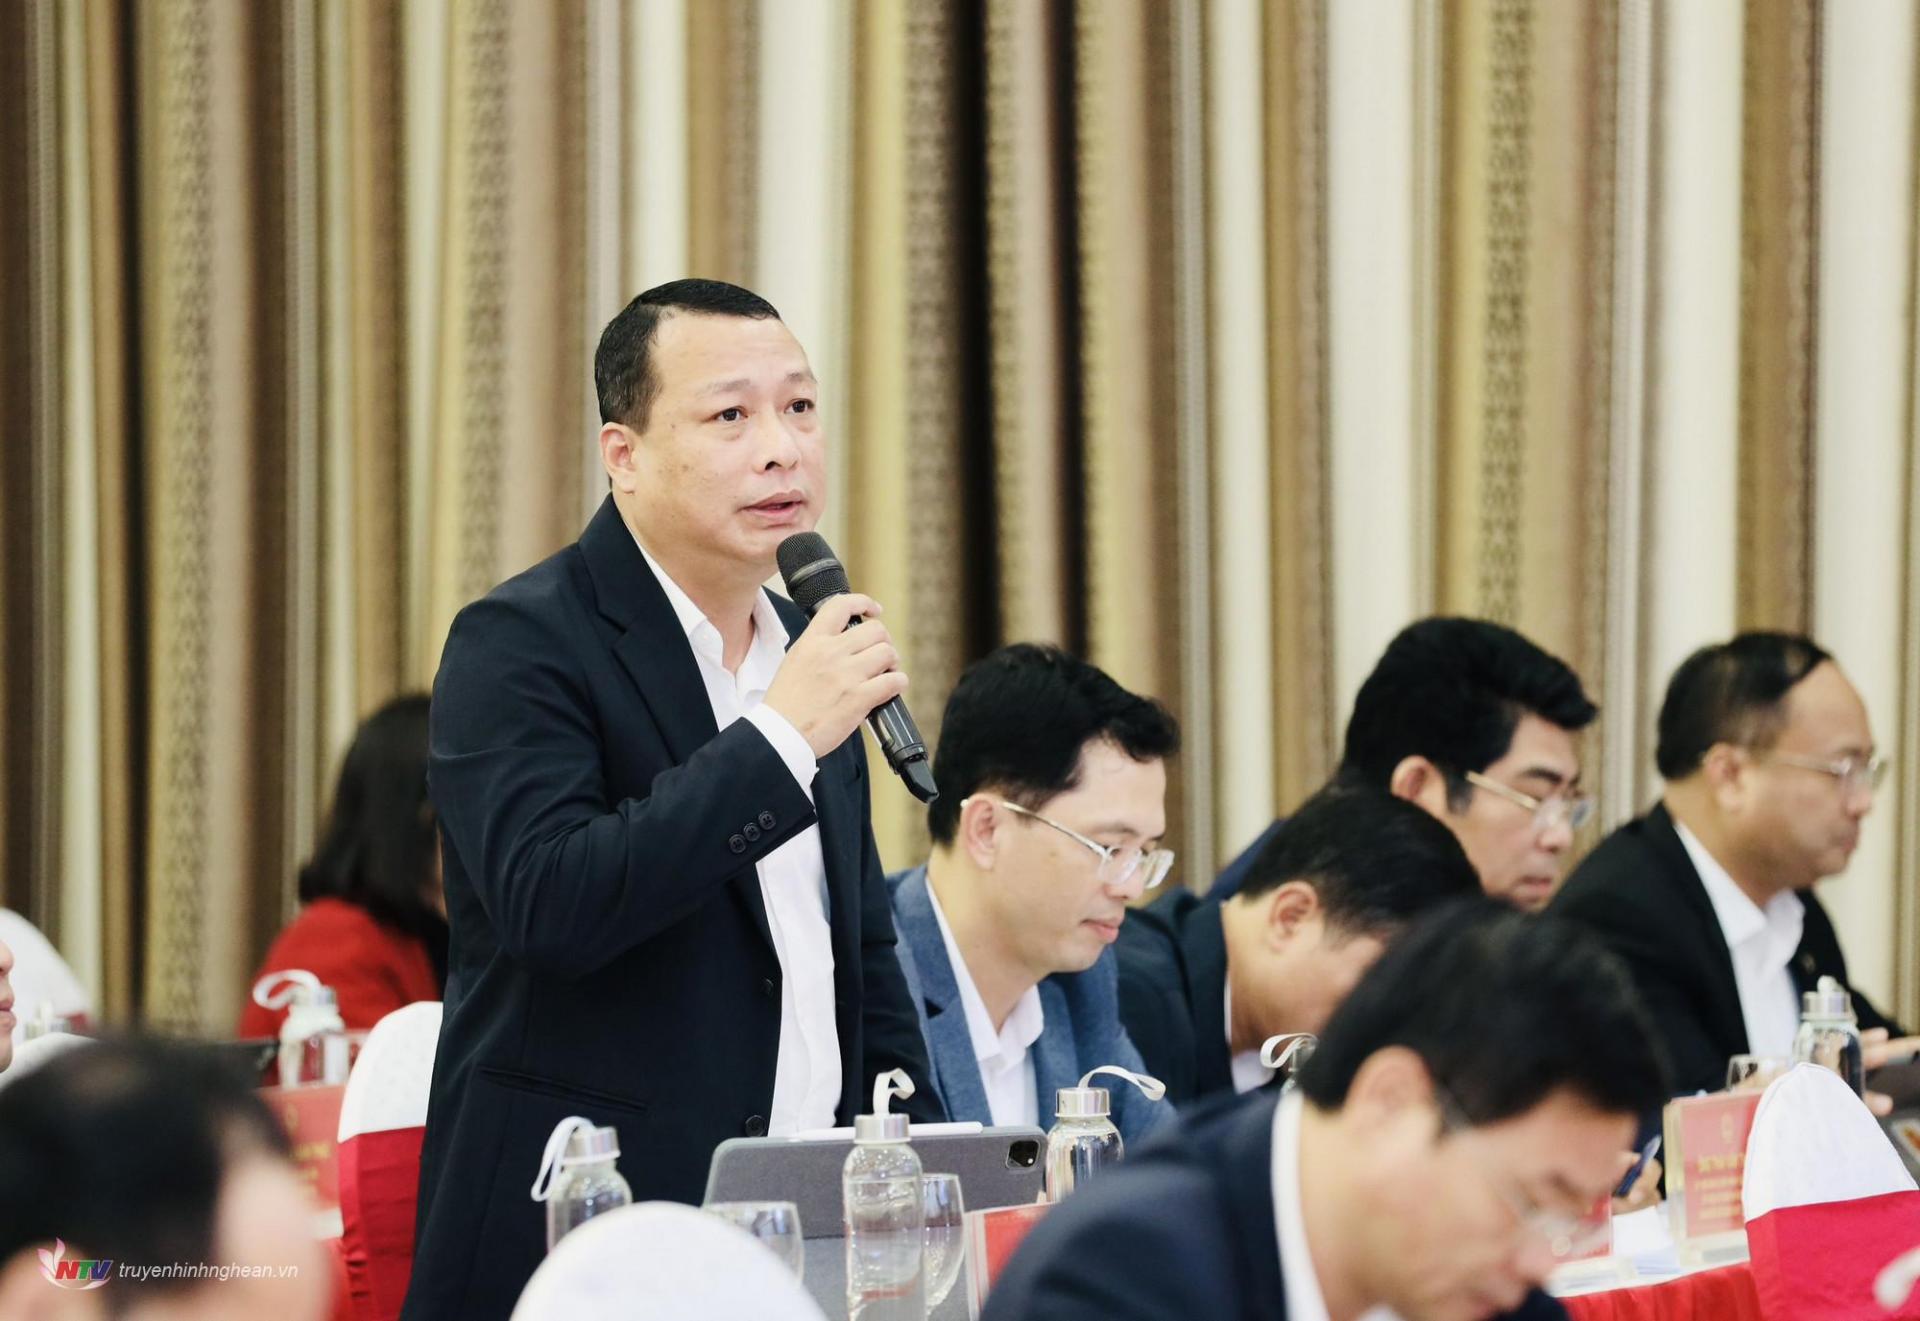 Đồng chí Phạm Hồng Quang - Giám đốc Sở Kế hoạch - Đầu tư phát biểu giải trình.